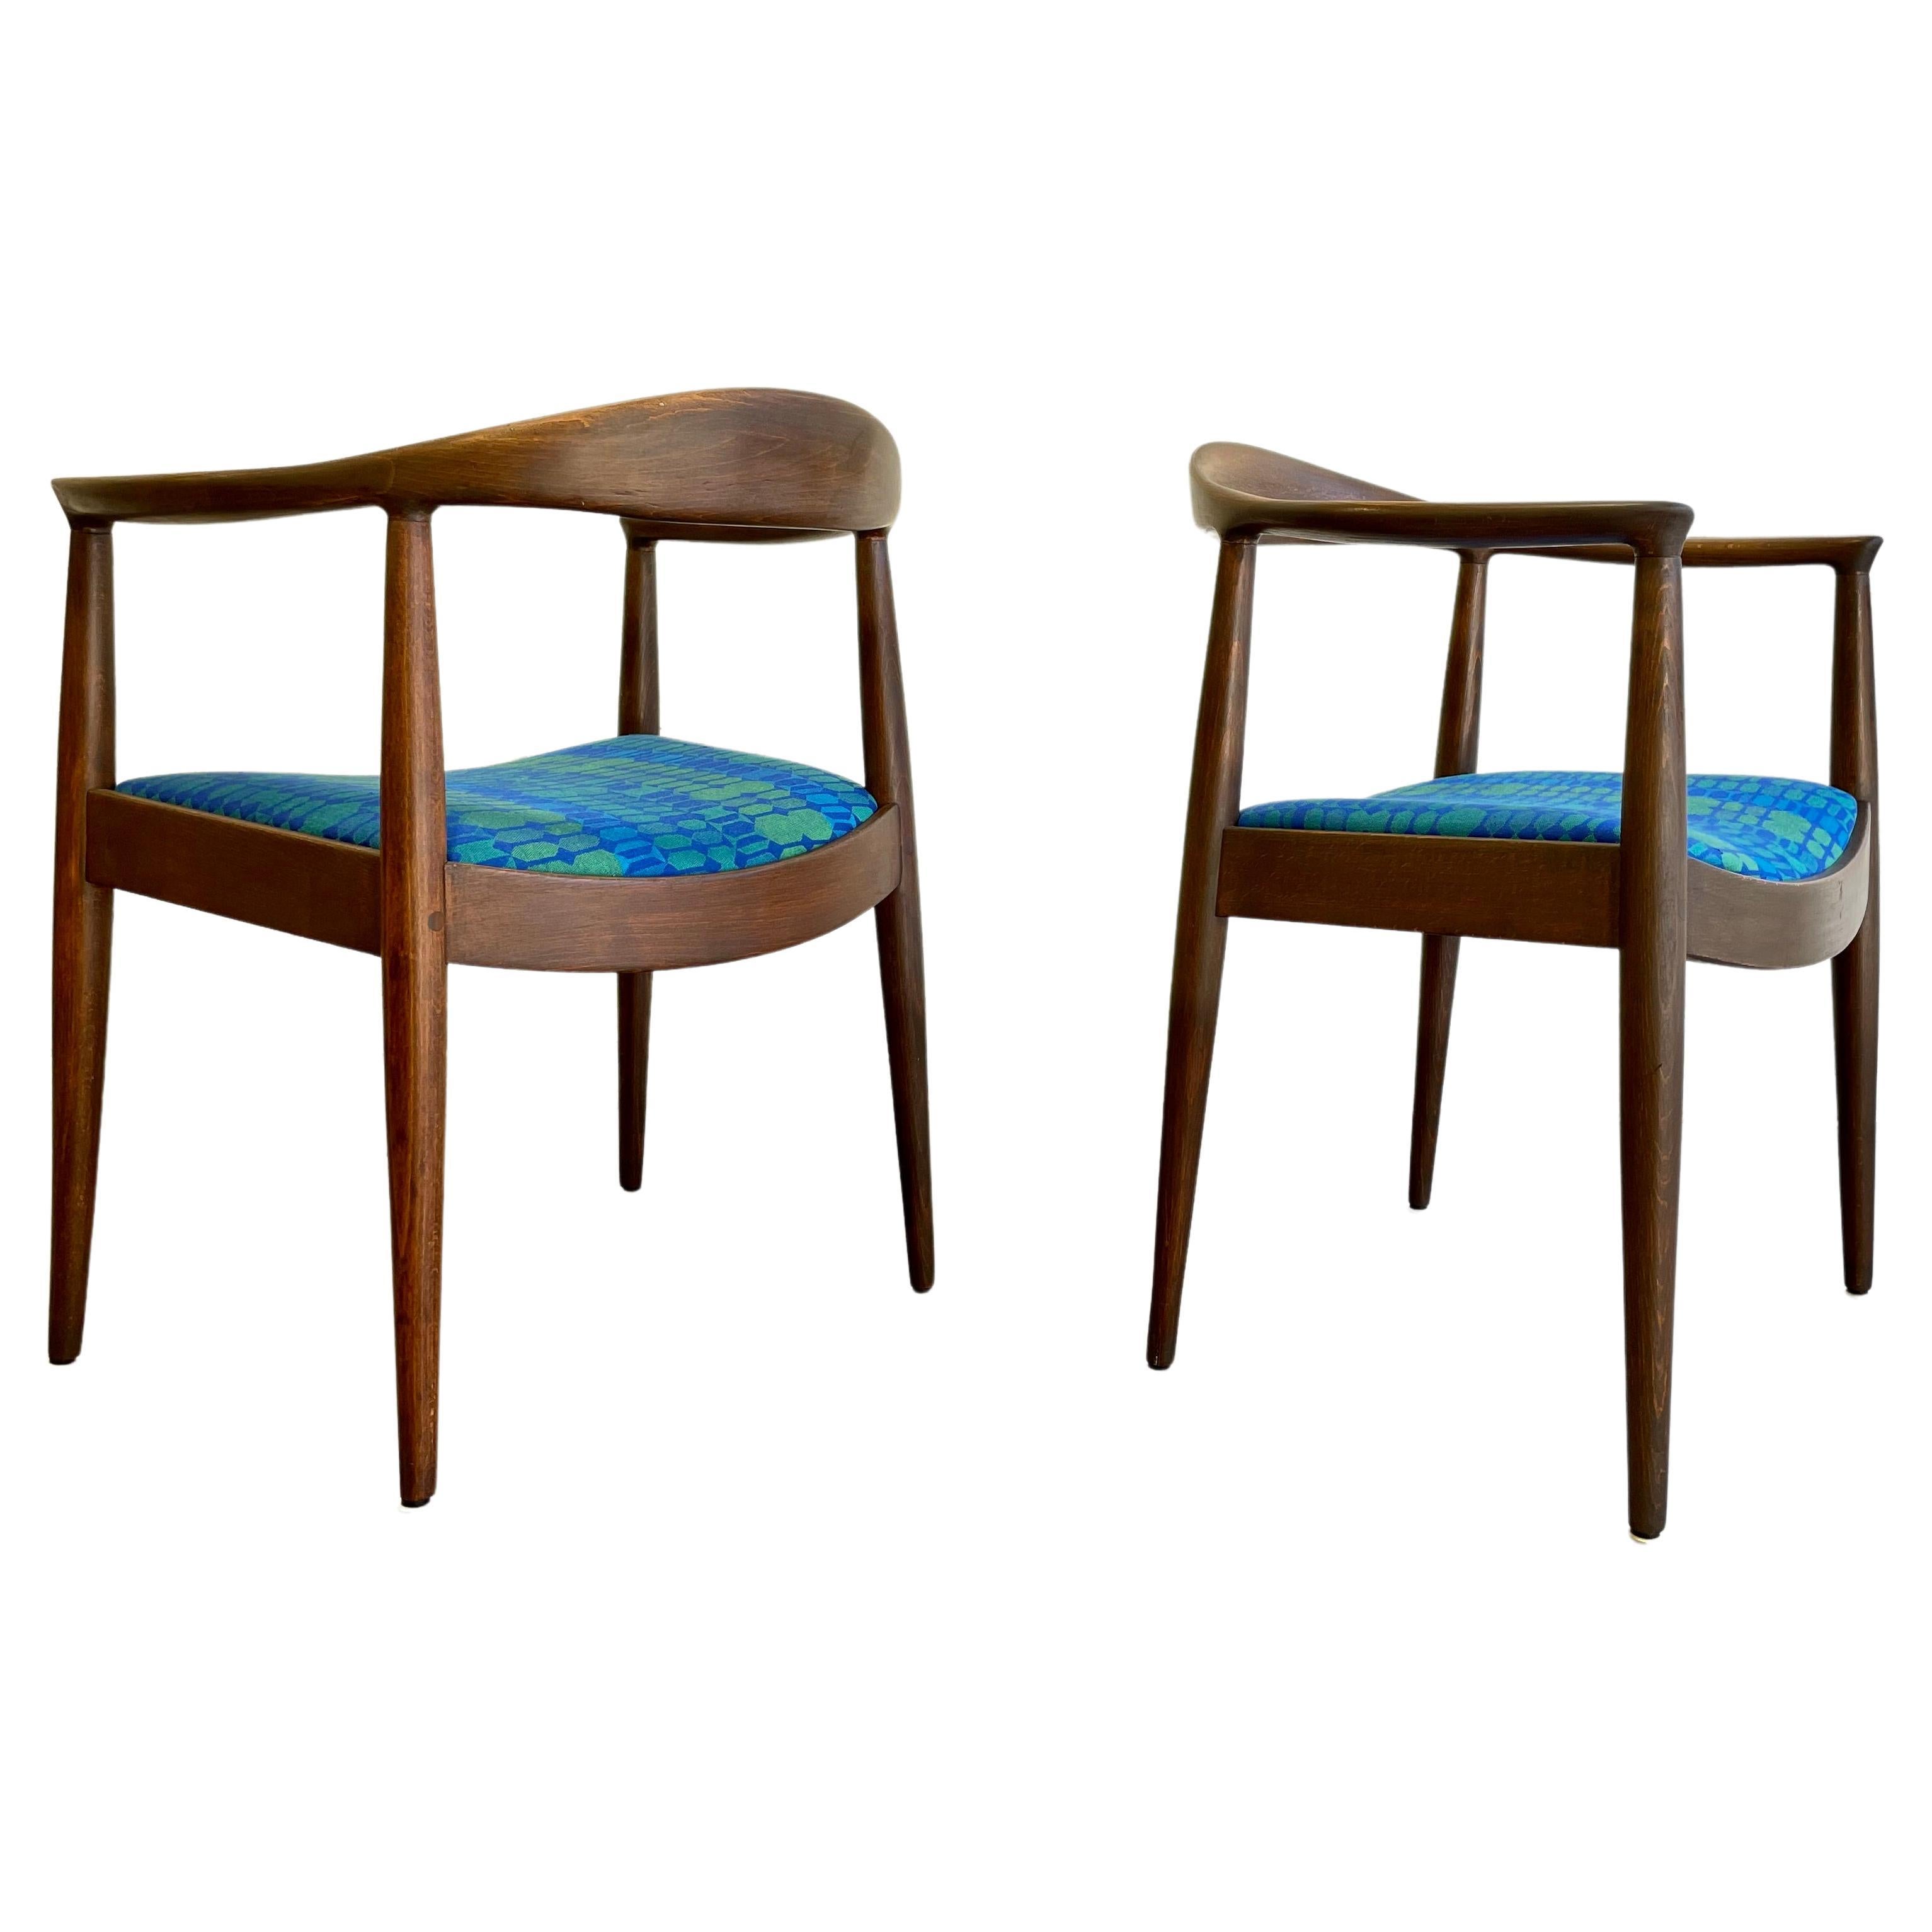 Chaises longues Vintage Mid Century Modern dans le style de Hans Wegner. L'élégant cadre curviligne en noyer est magnifiquement construit et les chaises ont été récemment remises à neuf, mettant en valeur les magnifiques veines du bois. Les chaises